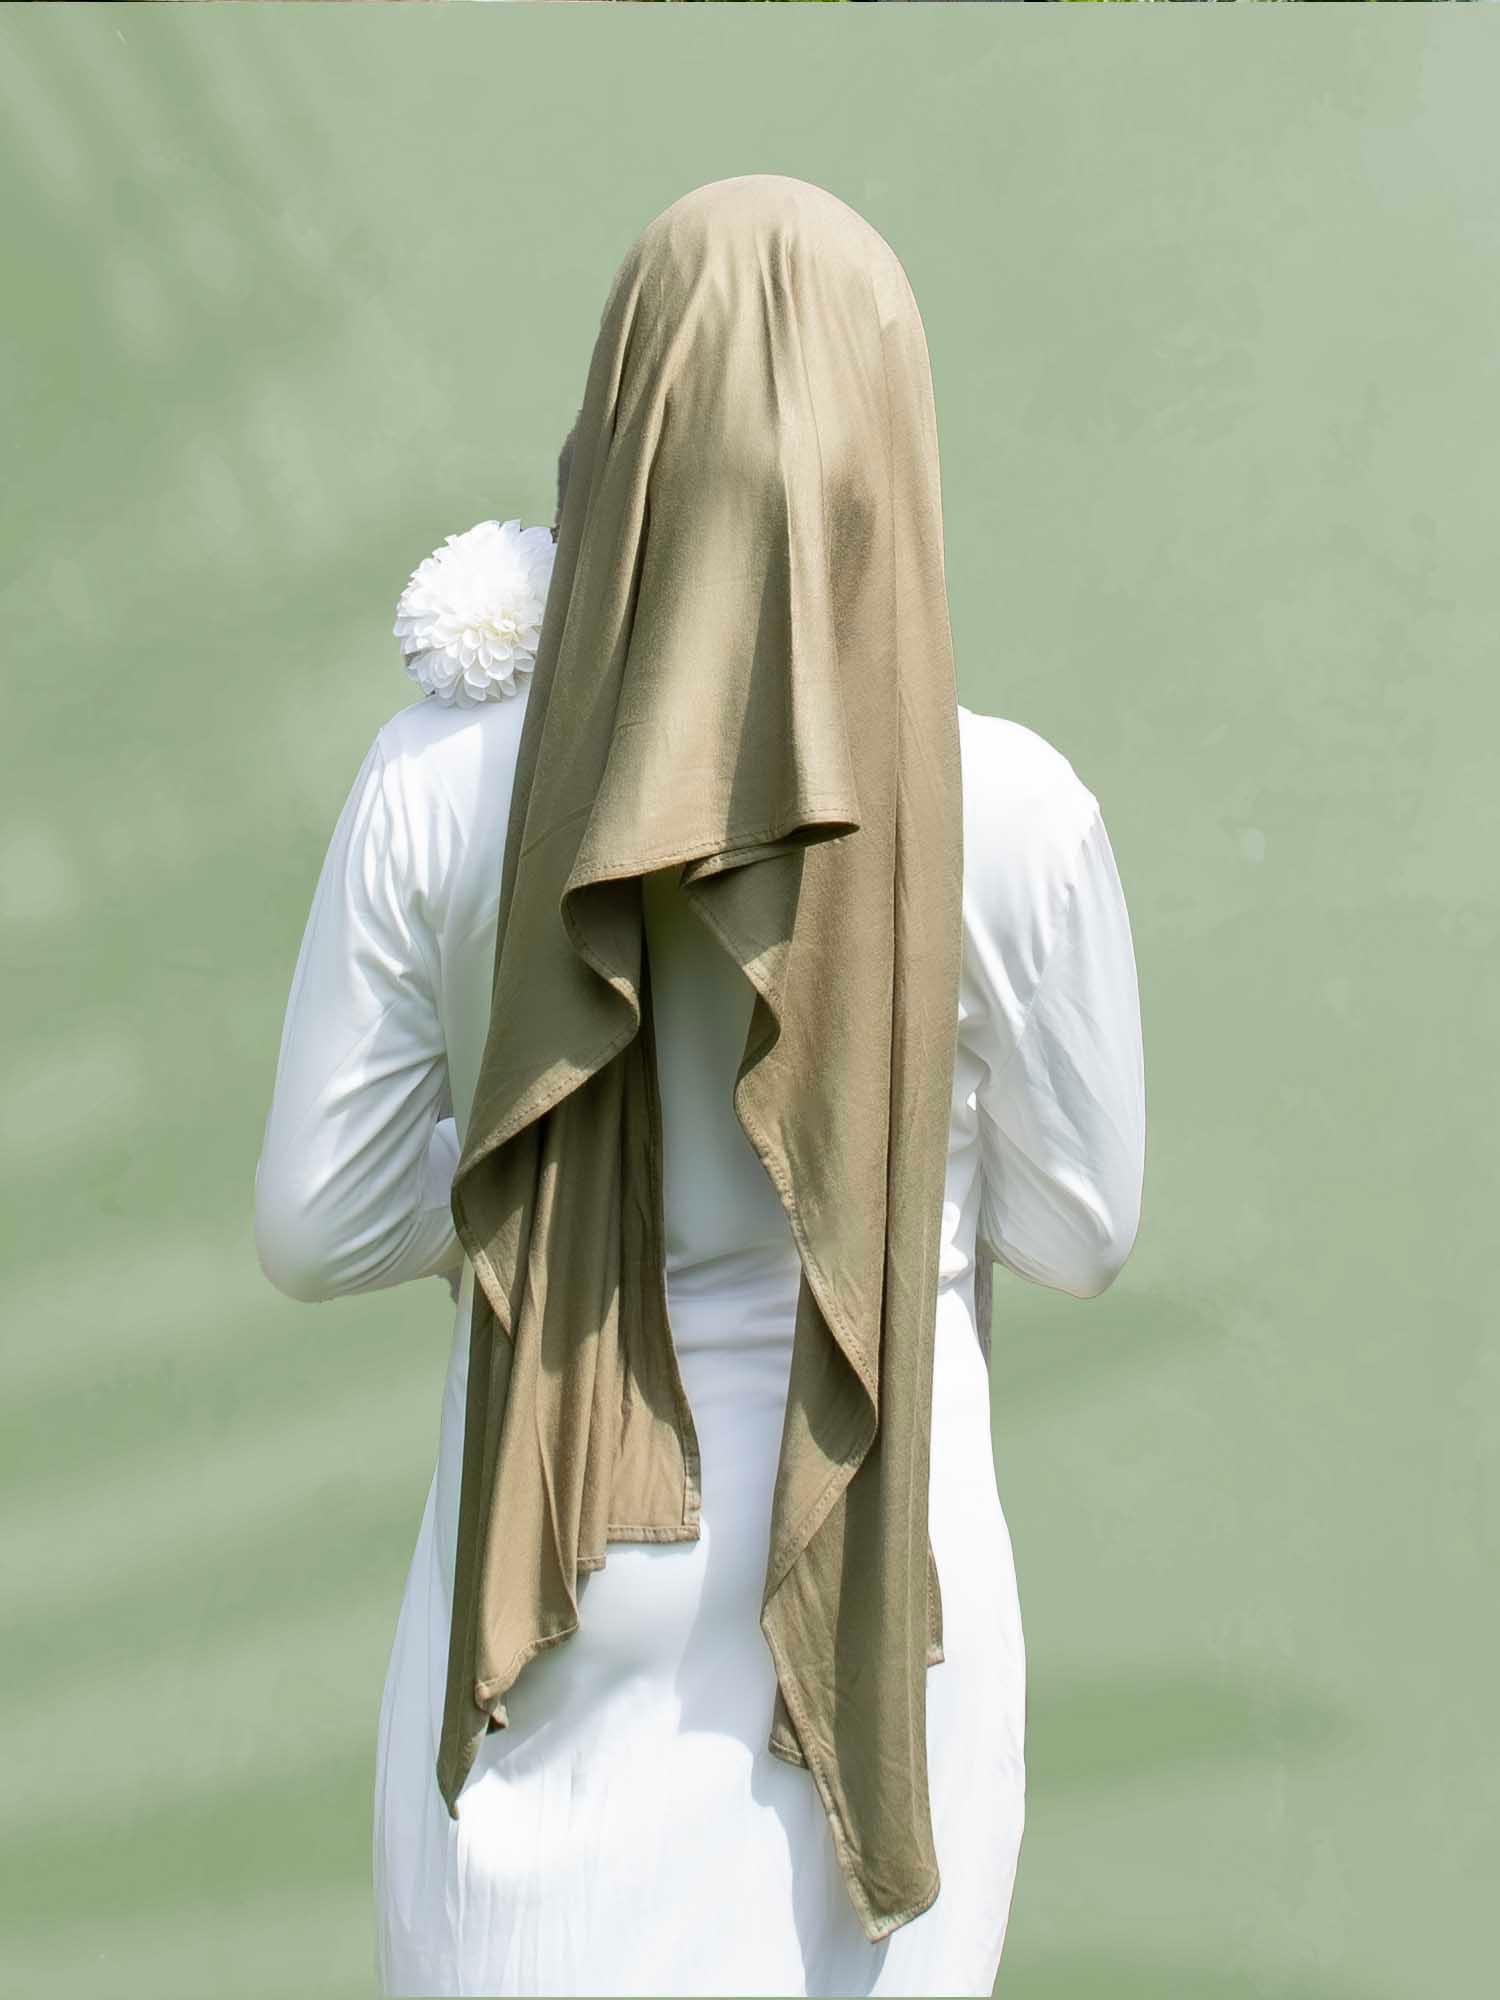 SoftTouch Perfect Fit Hijab in Pistachio Princess - BubbleGirl